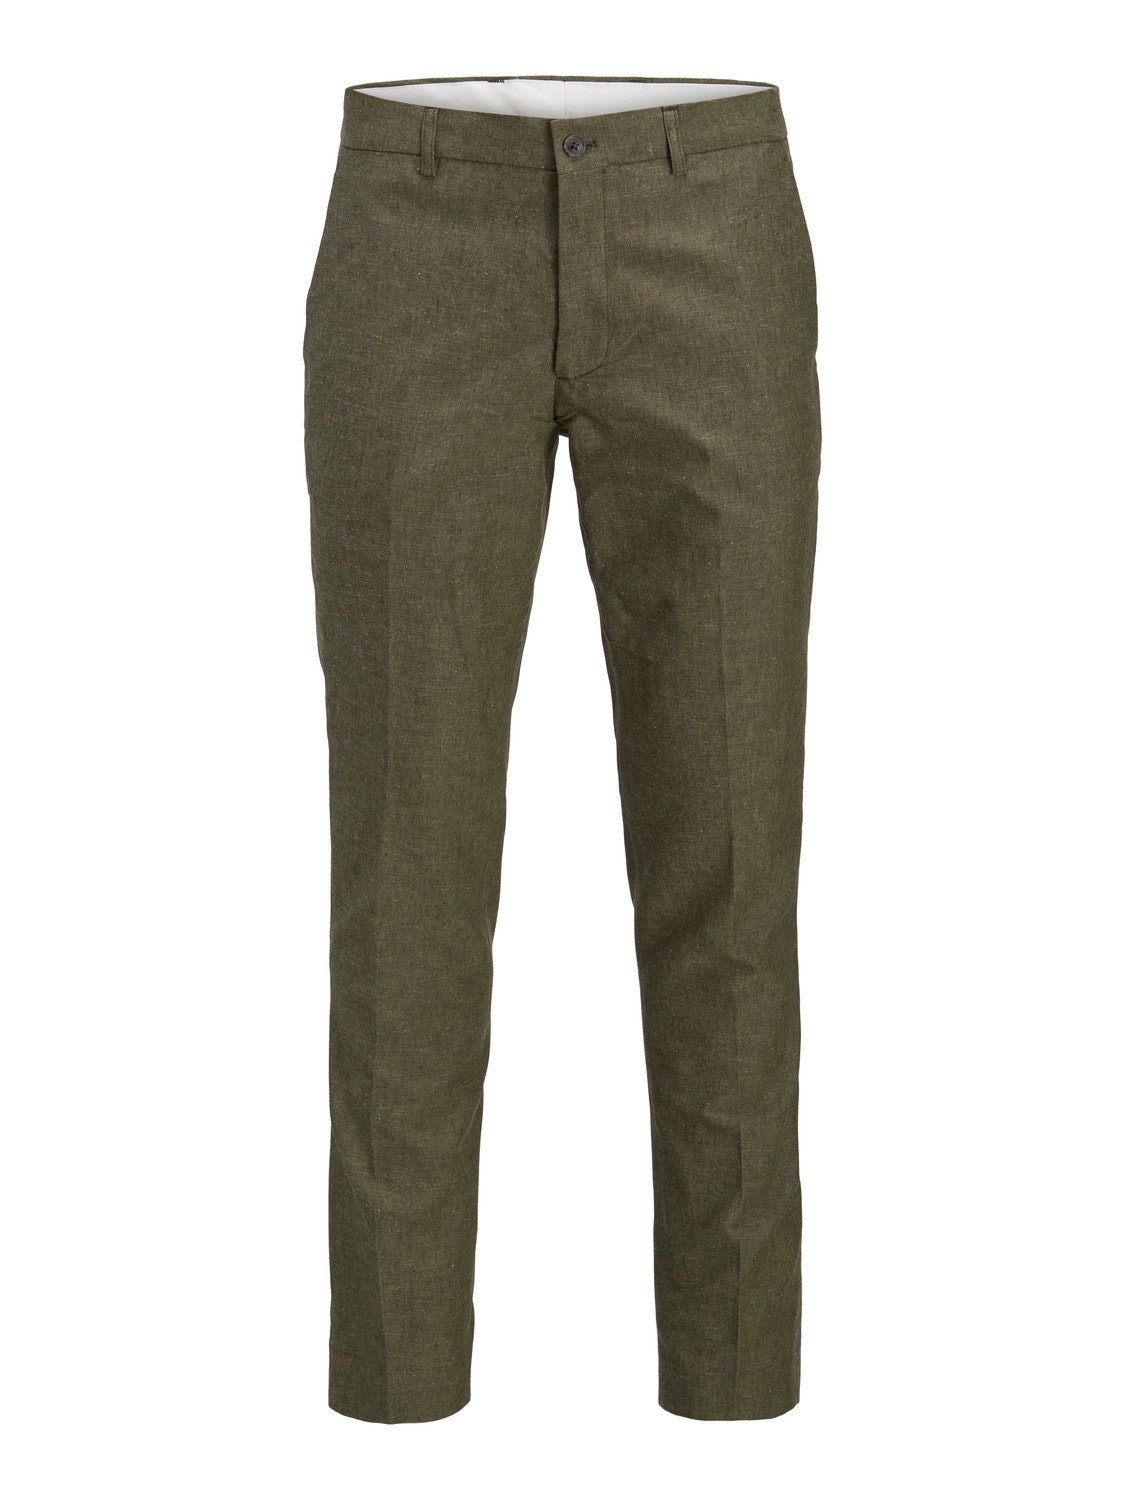 Jack & Jones JPRRIVIERA Slim Fit Tailored bukser -Olive Night - 12228724